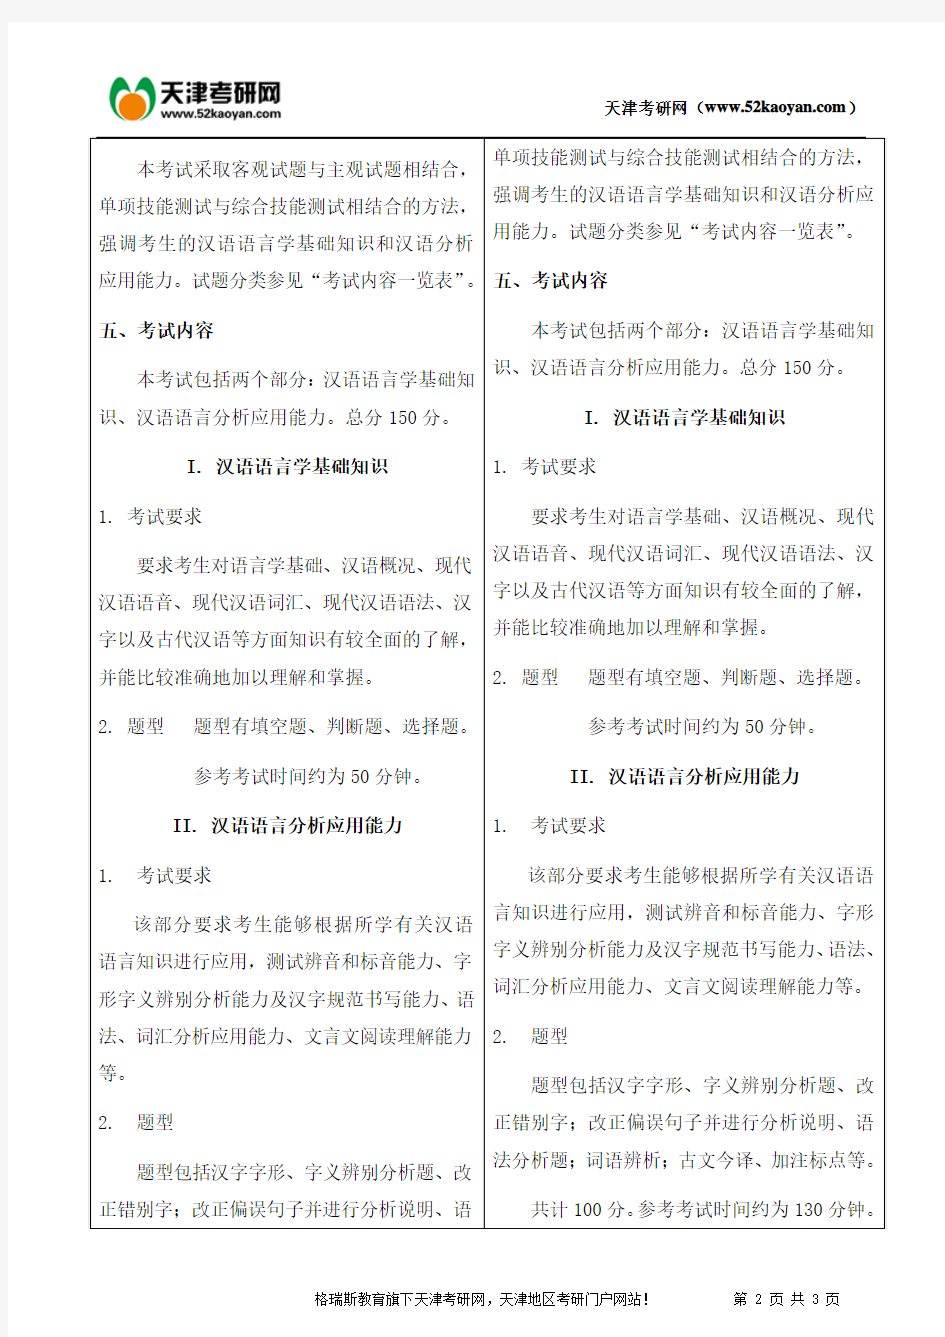 南开大学汉语基础考研复习辅导资料及大纲对比信息